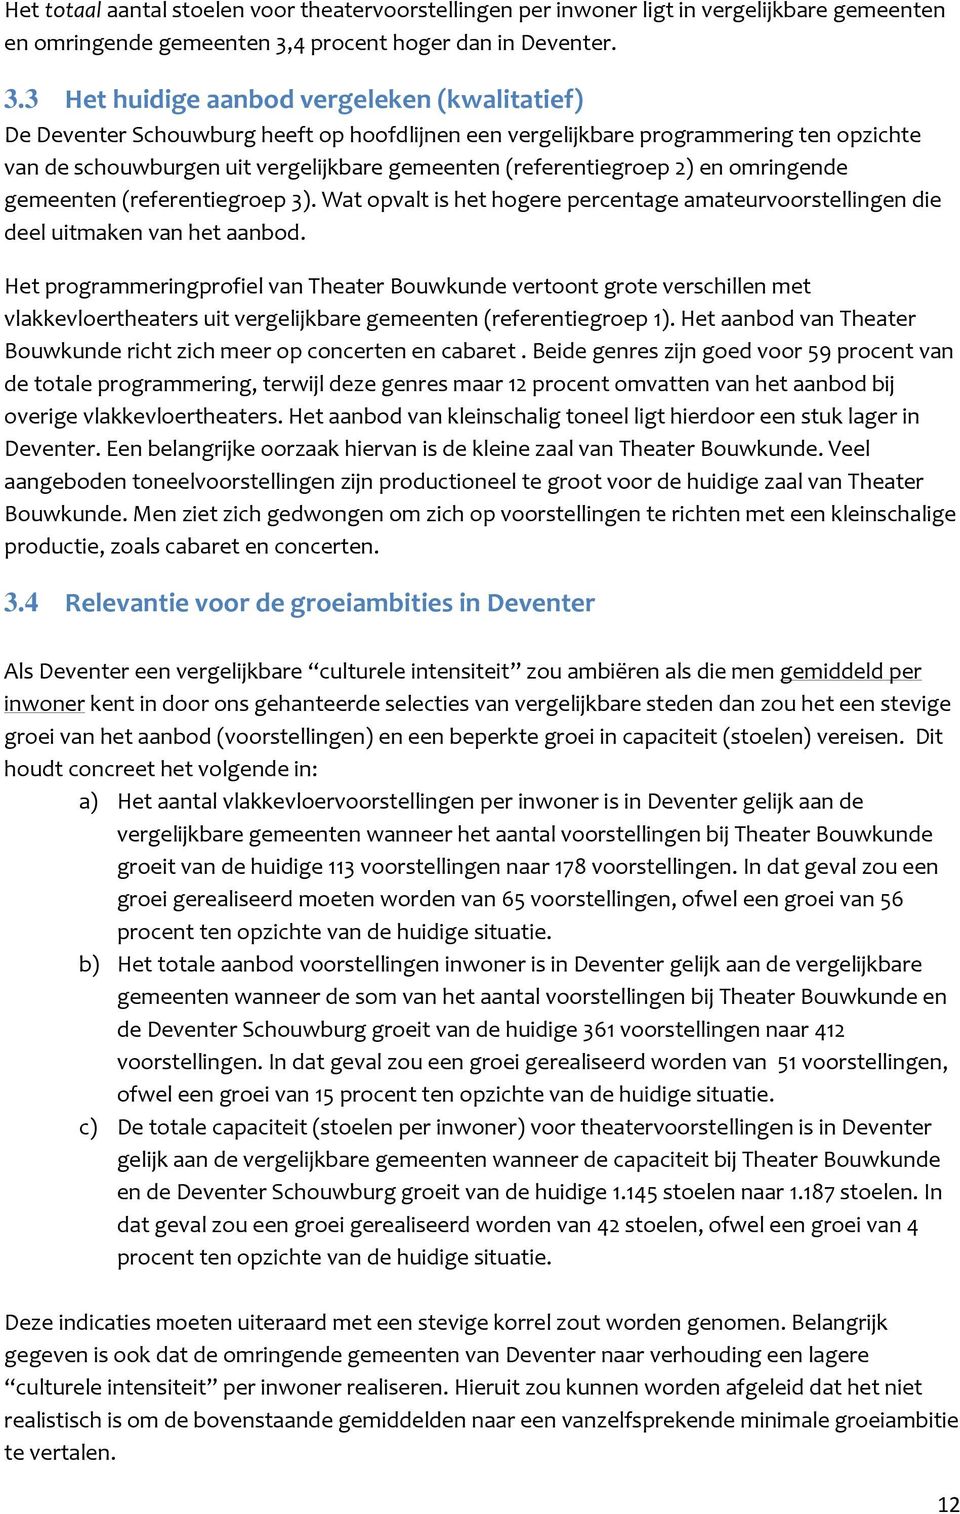 3 Het huidige aanbod vergeleken (kwalitatief) De Deventer Schouwburg heeft op hoofdlijnen een vergelijkbare programmering ten opzichte van de schouwburgen uit vergelijkbare gemeenten (referentiegroep